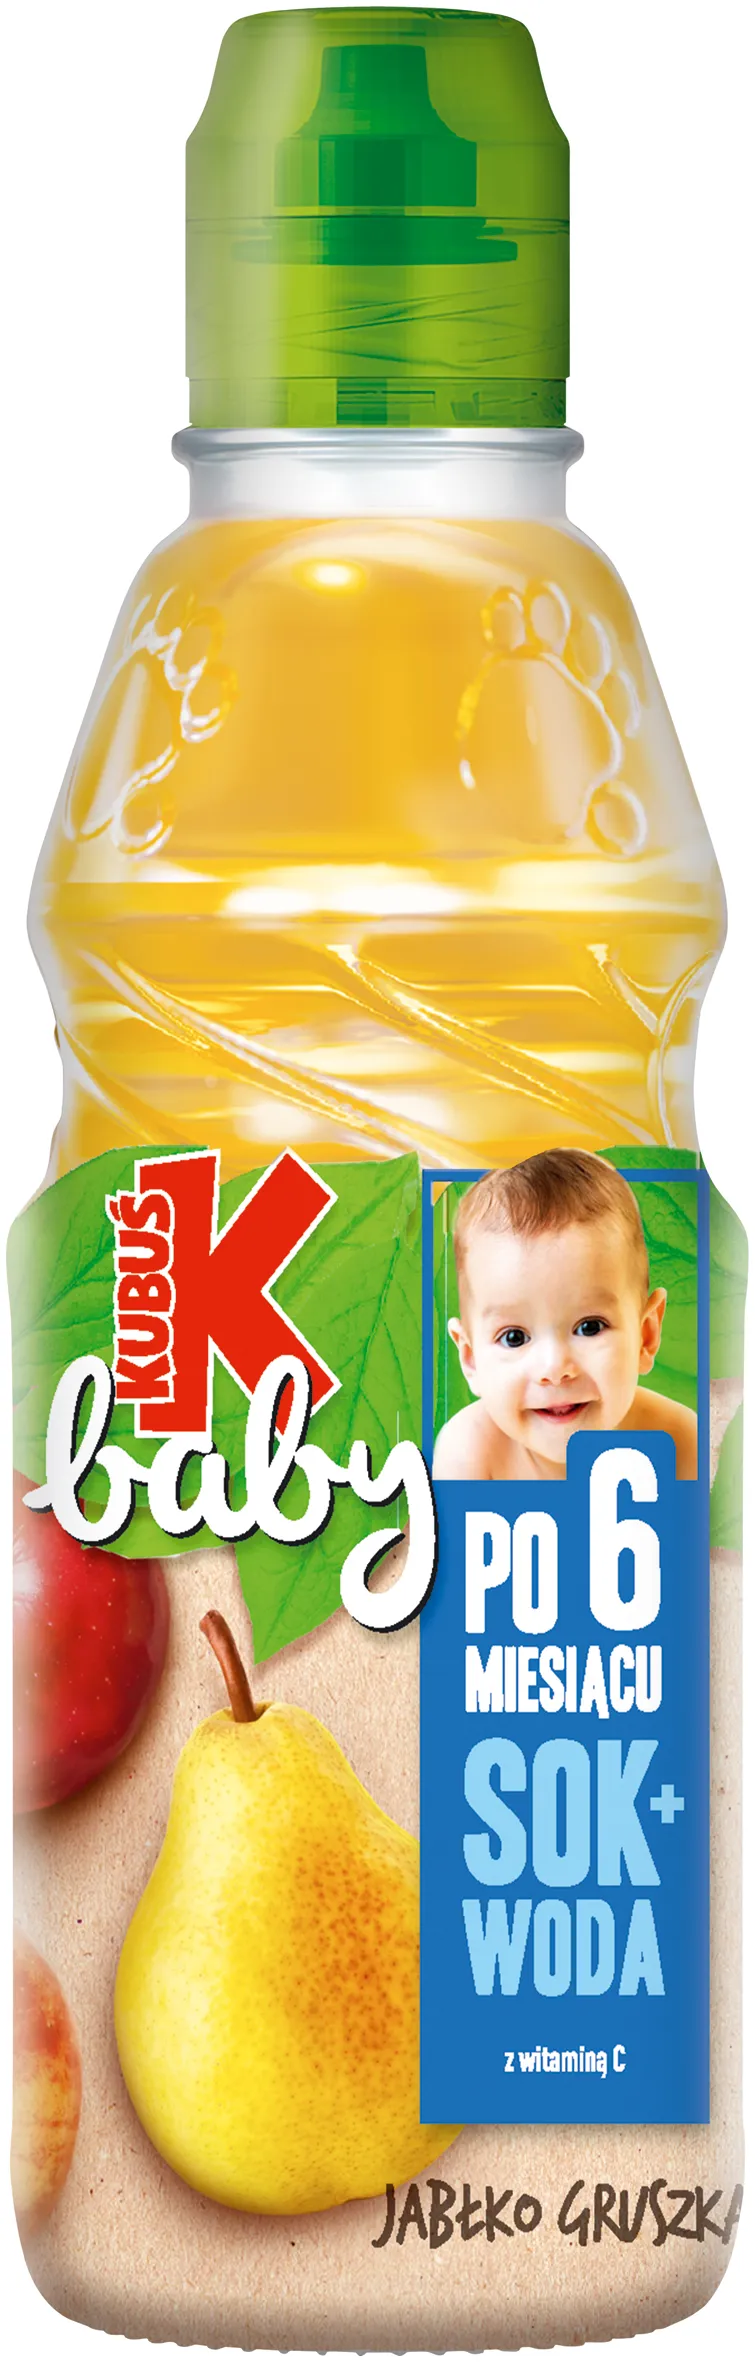 Kubuś Baby Sok + Woda jabłko, gruszka po 6. miesiącu, 300 ml